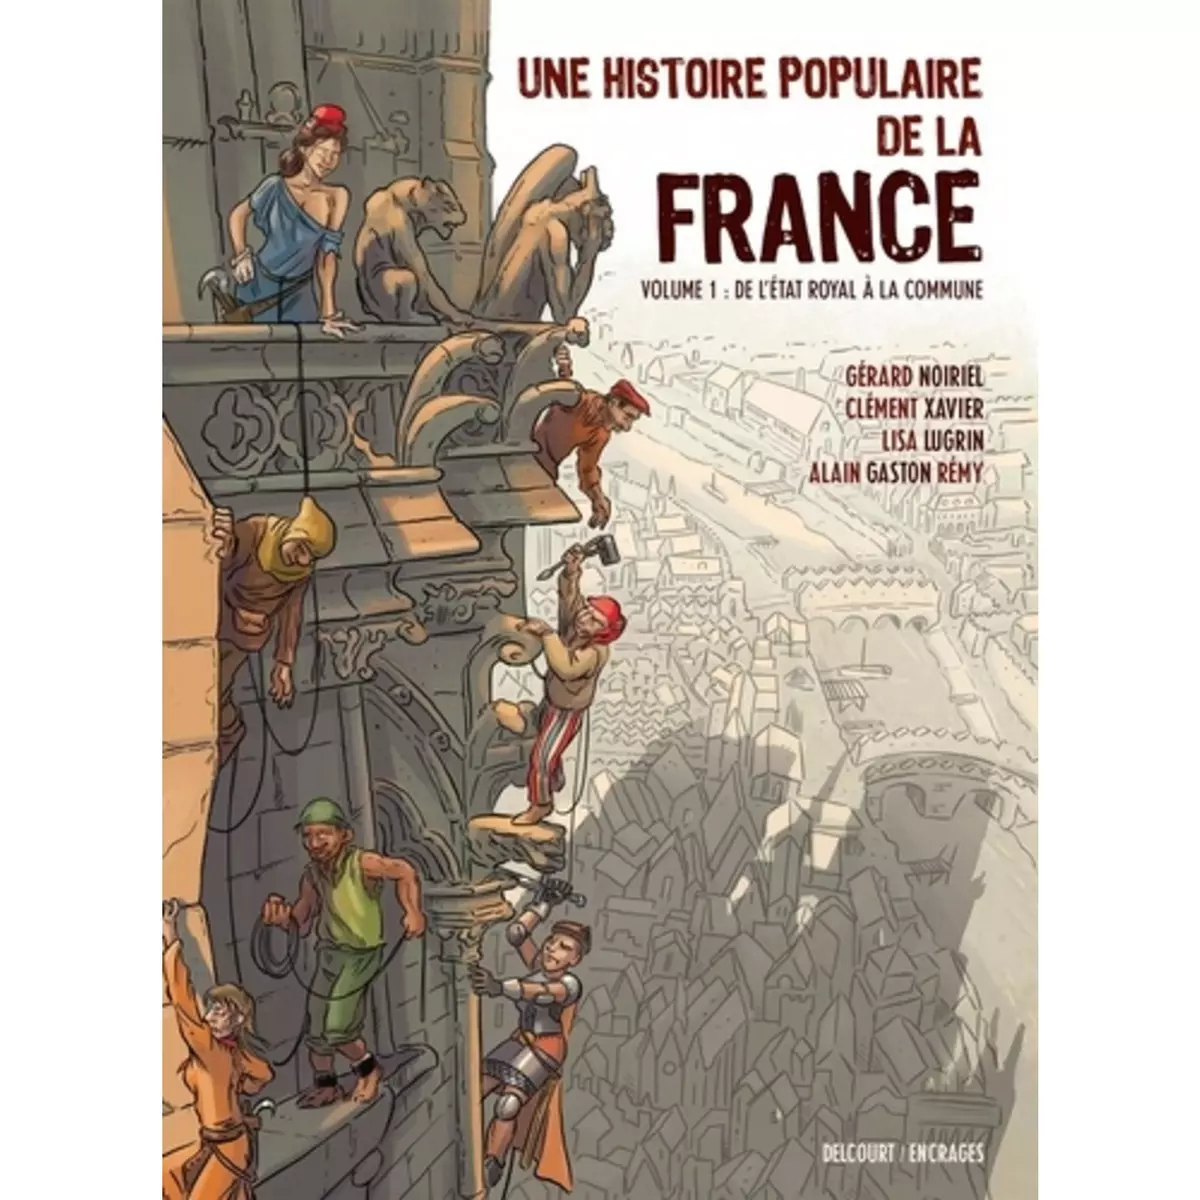  UNE HISTOIRE POPULAIRE DE LA FRANCE TOME 1 : DE L'ETAT ROYAL A LA COMMUNE, Lugrin Lisa